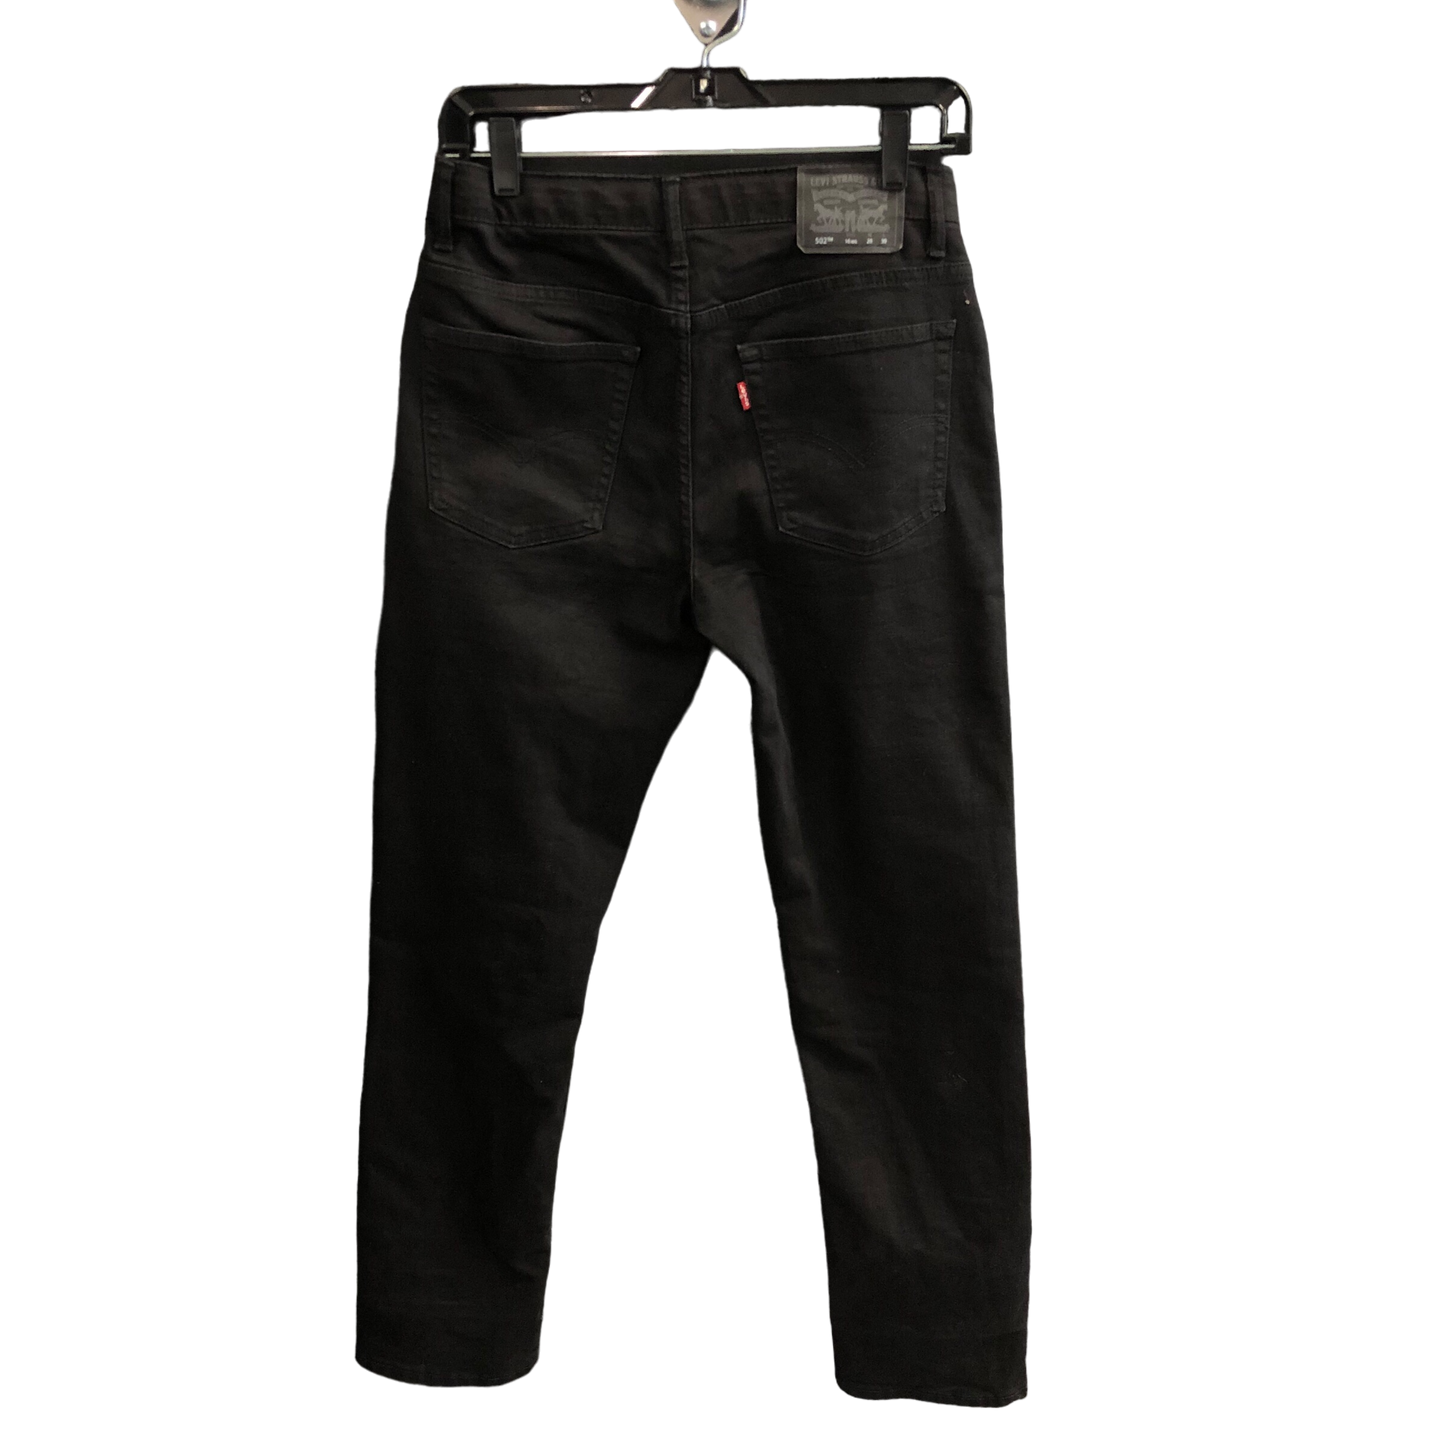 Black Jeans Boot Cut Levis, Size 16